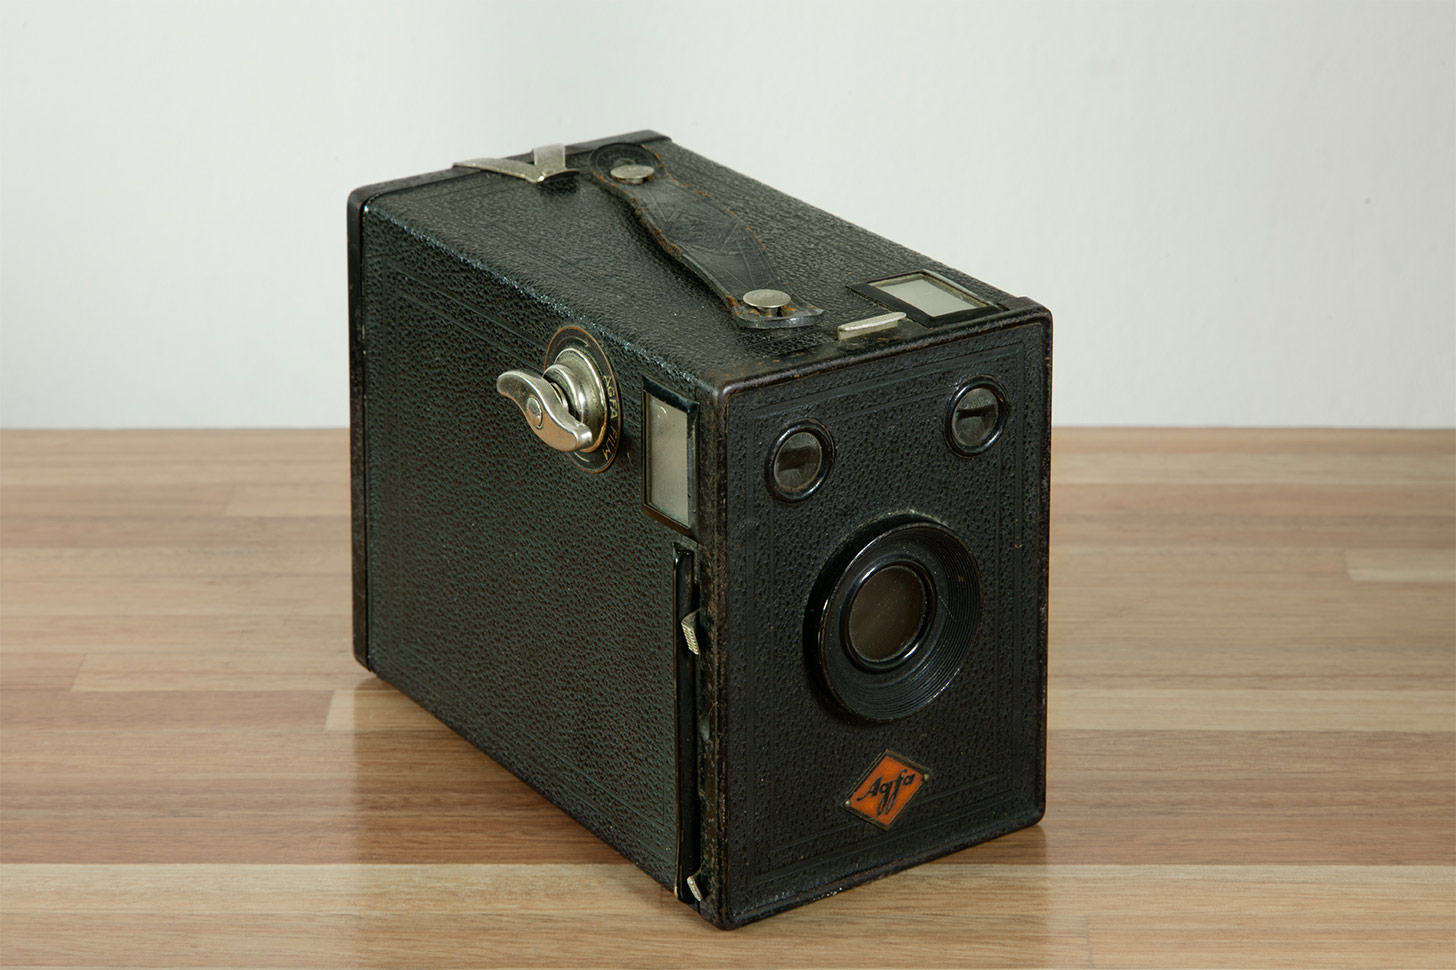 Agfa Box camera